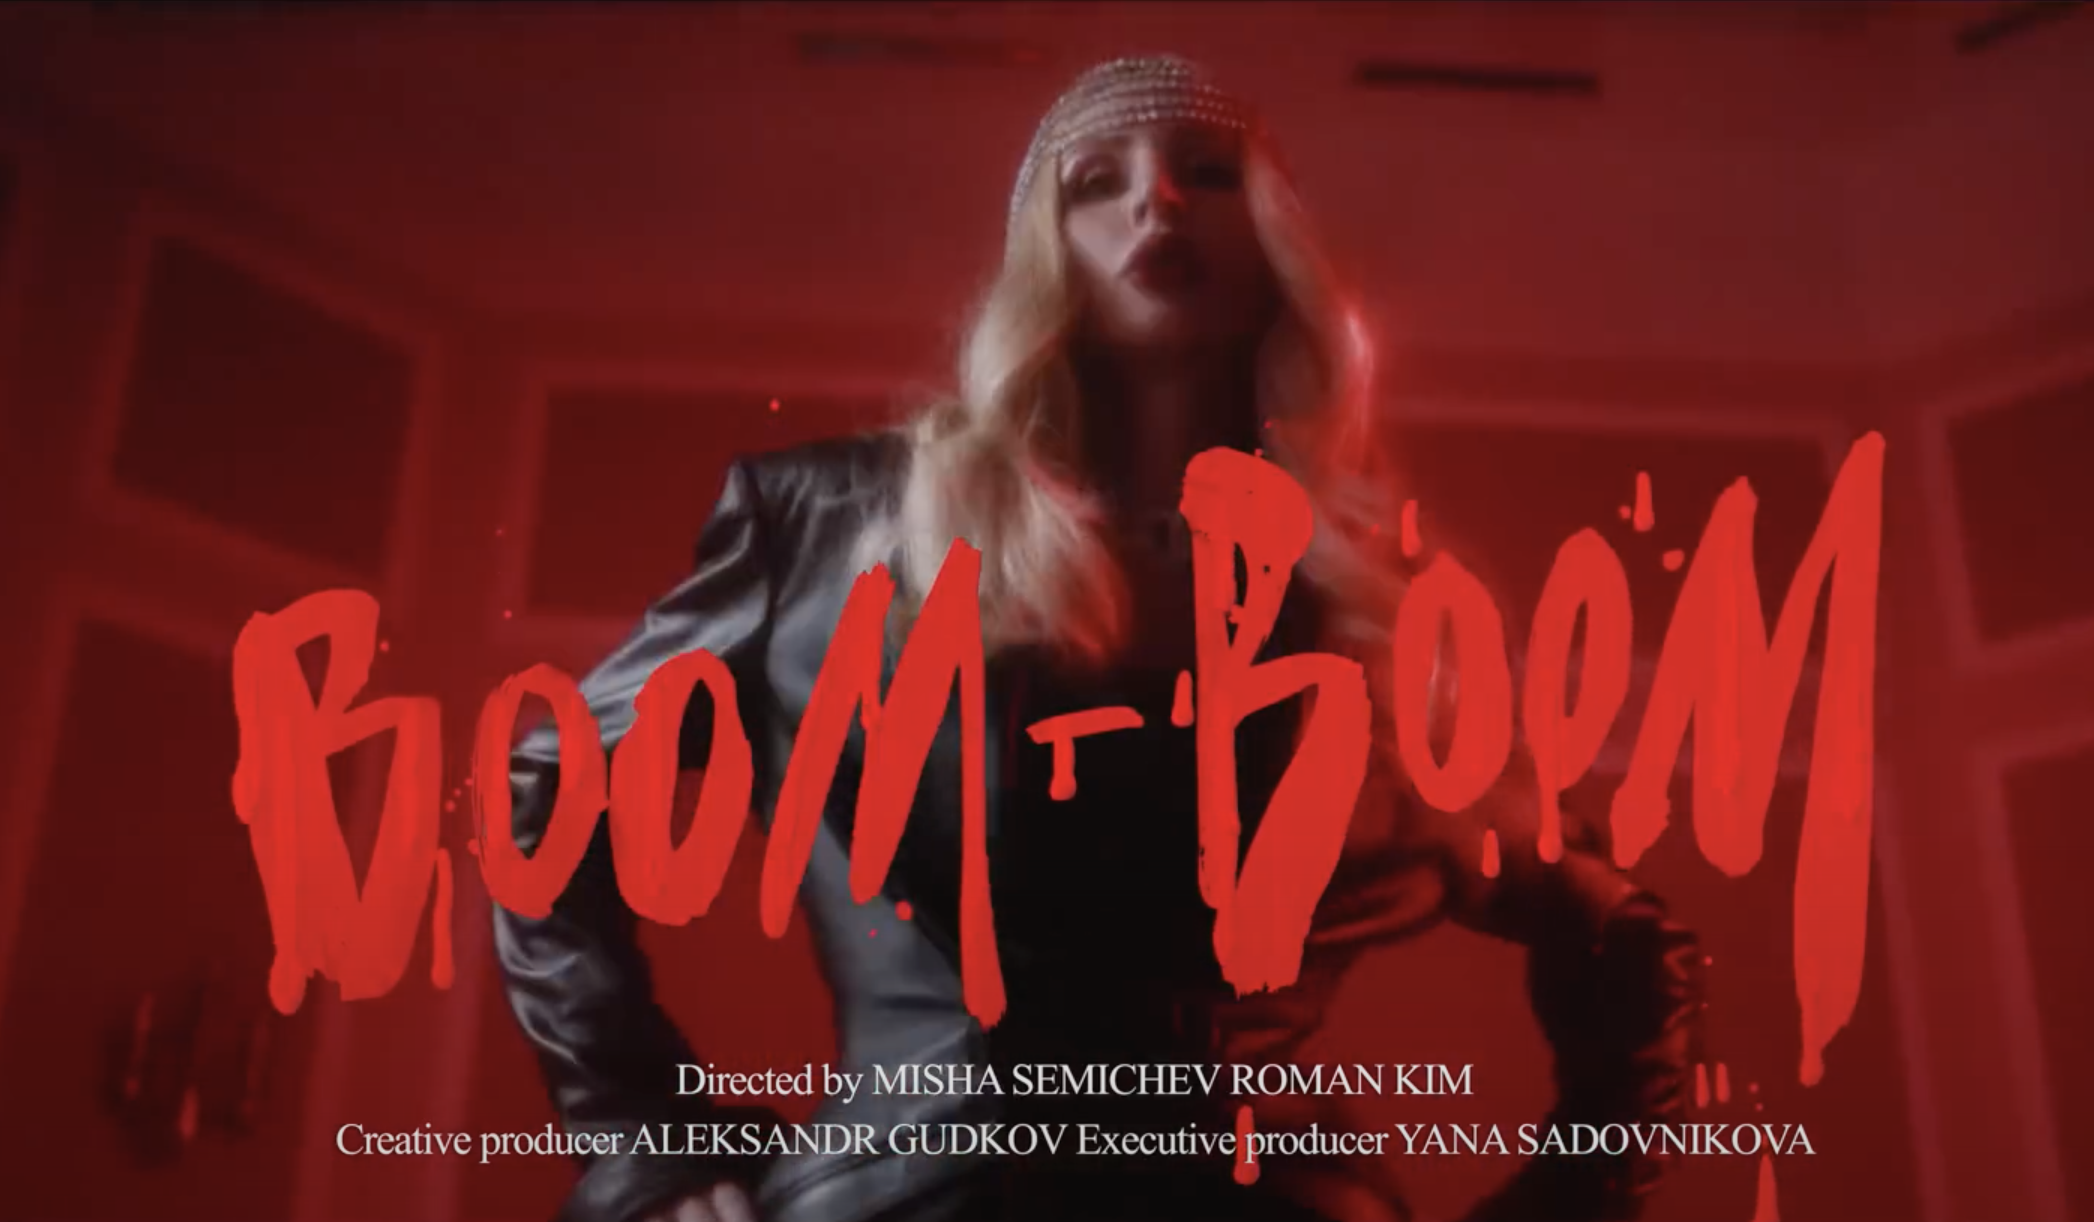 Звезды, цитаты Симоны де Бовуар и монологи вагины — в клипе Светланы Лободы Boom Boom